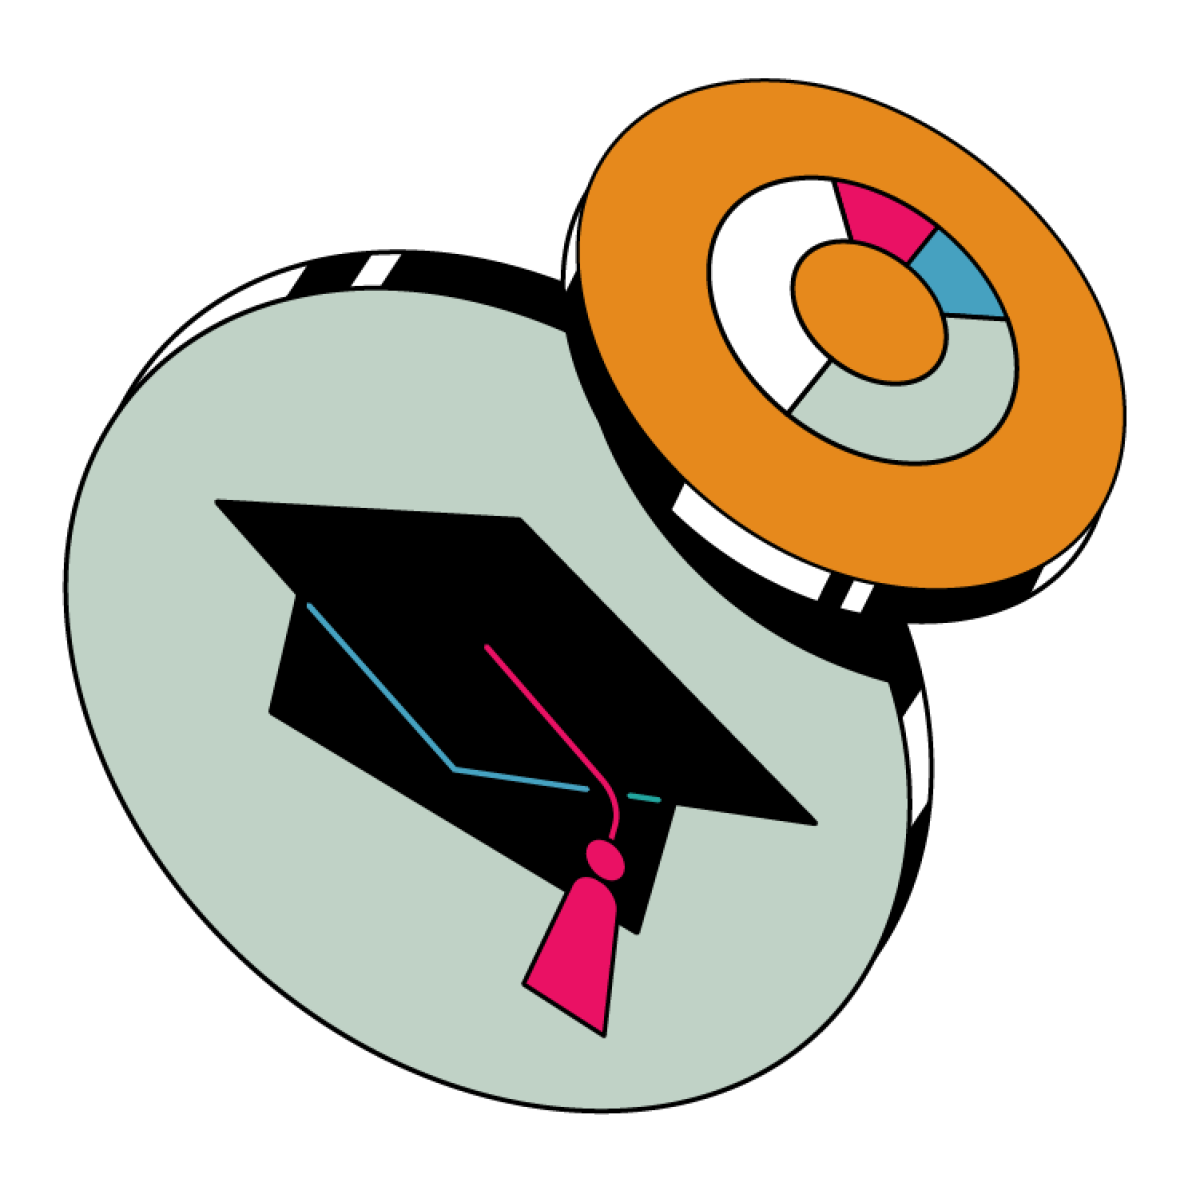 Ilustración de una gorra de graduación y un gráfico circular.